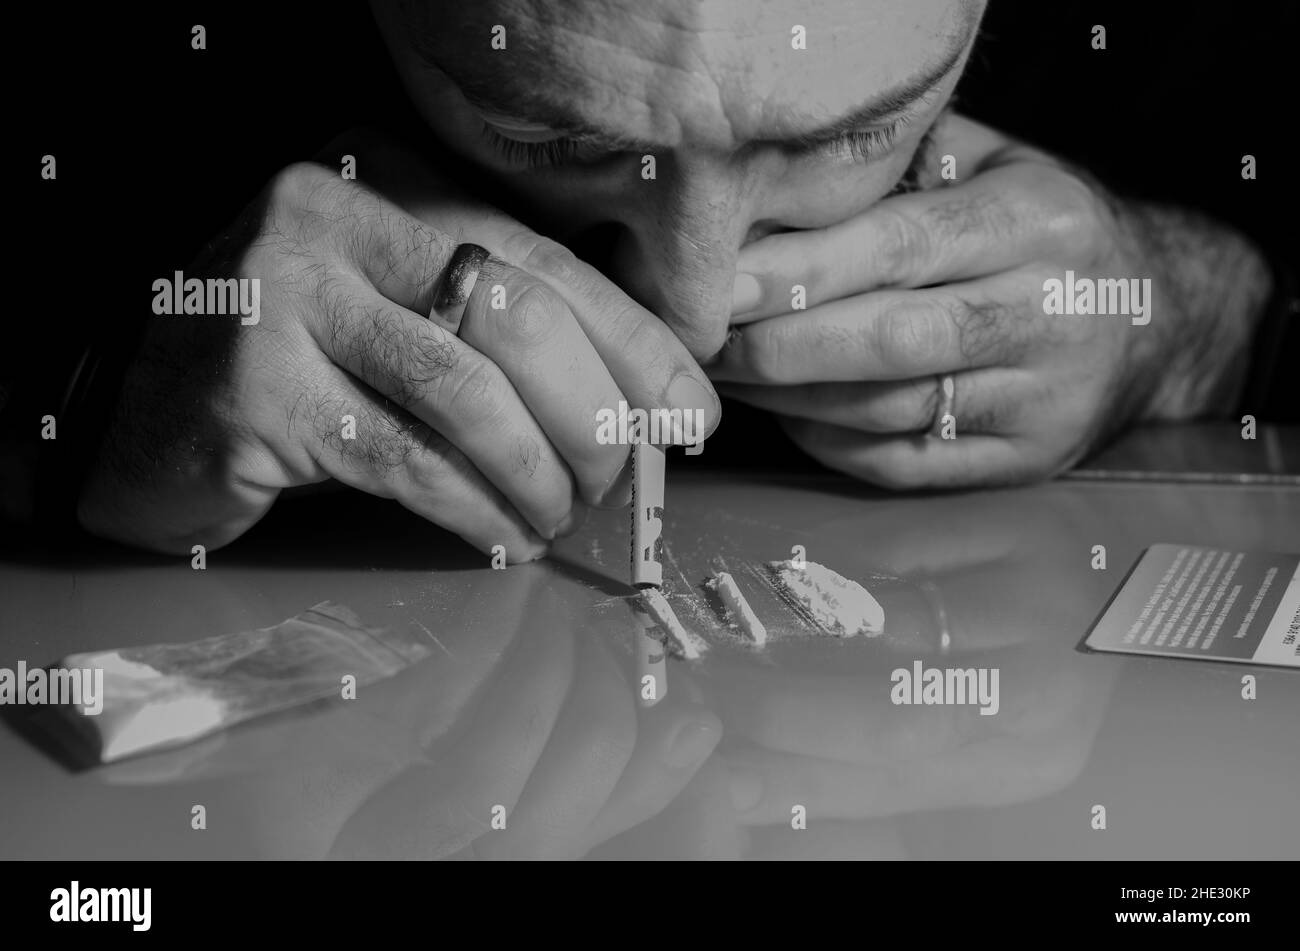 Cet homme ronfle la poudre de cocaïne avec billet de banque roulé.Concept de narcotiques.Version noir et blanc. Banque D'Images